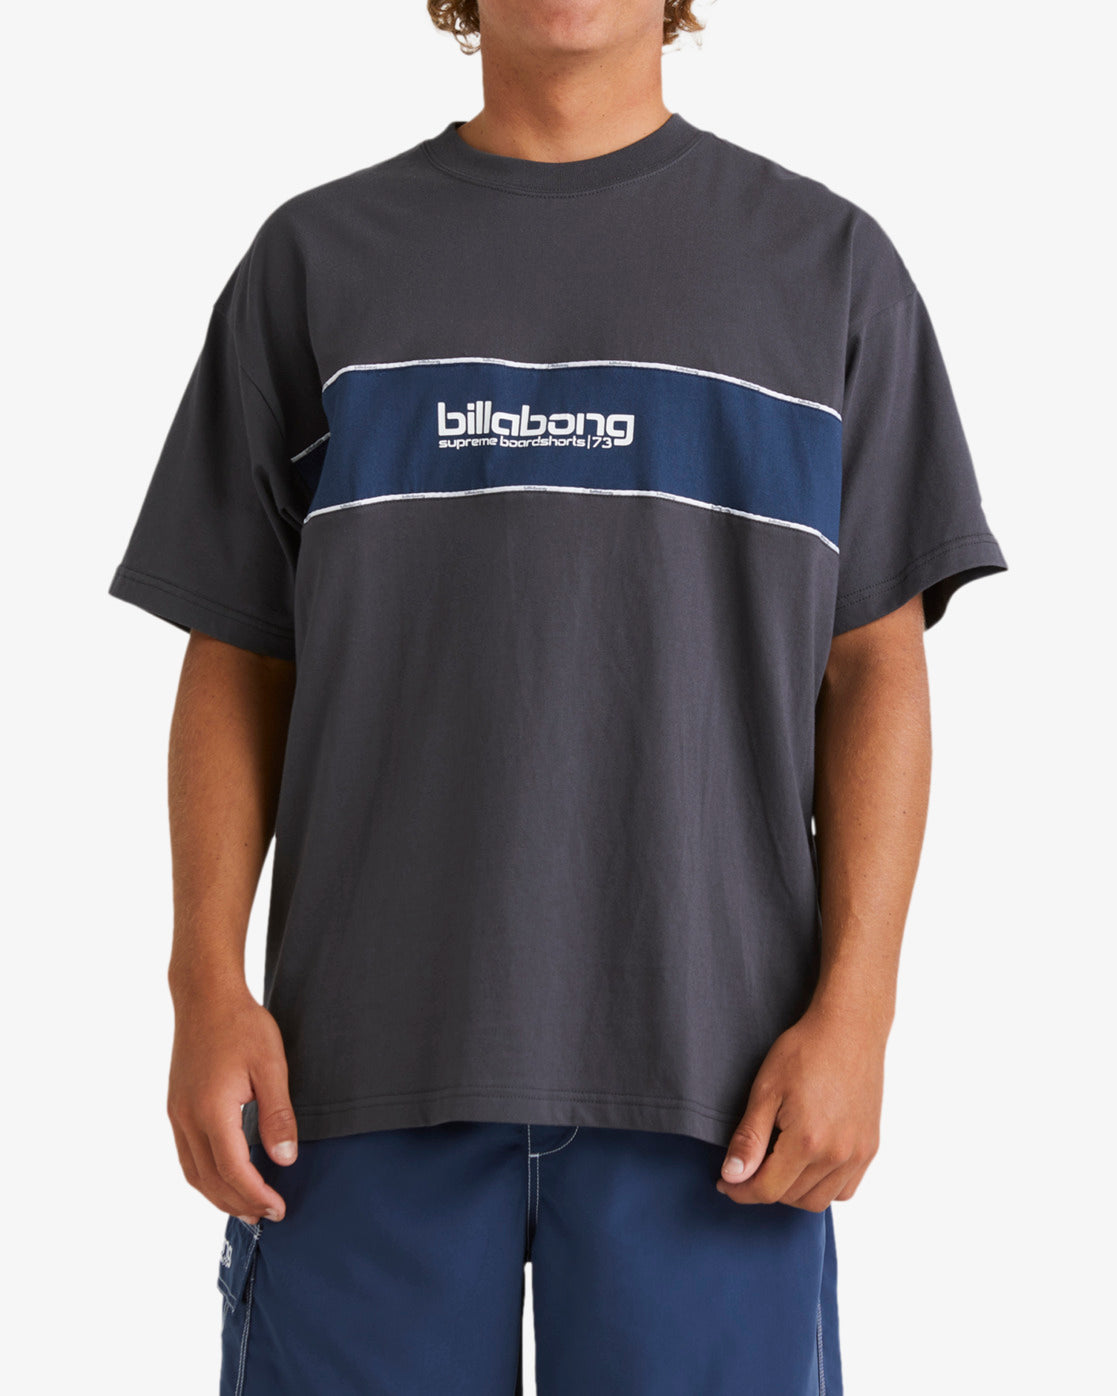 Backbeach T-Shirt